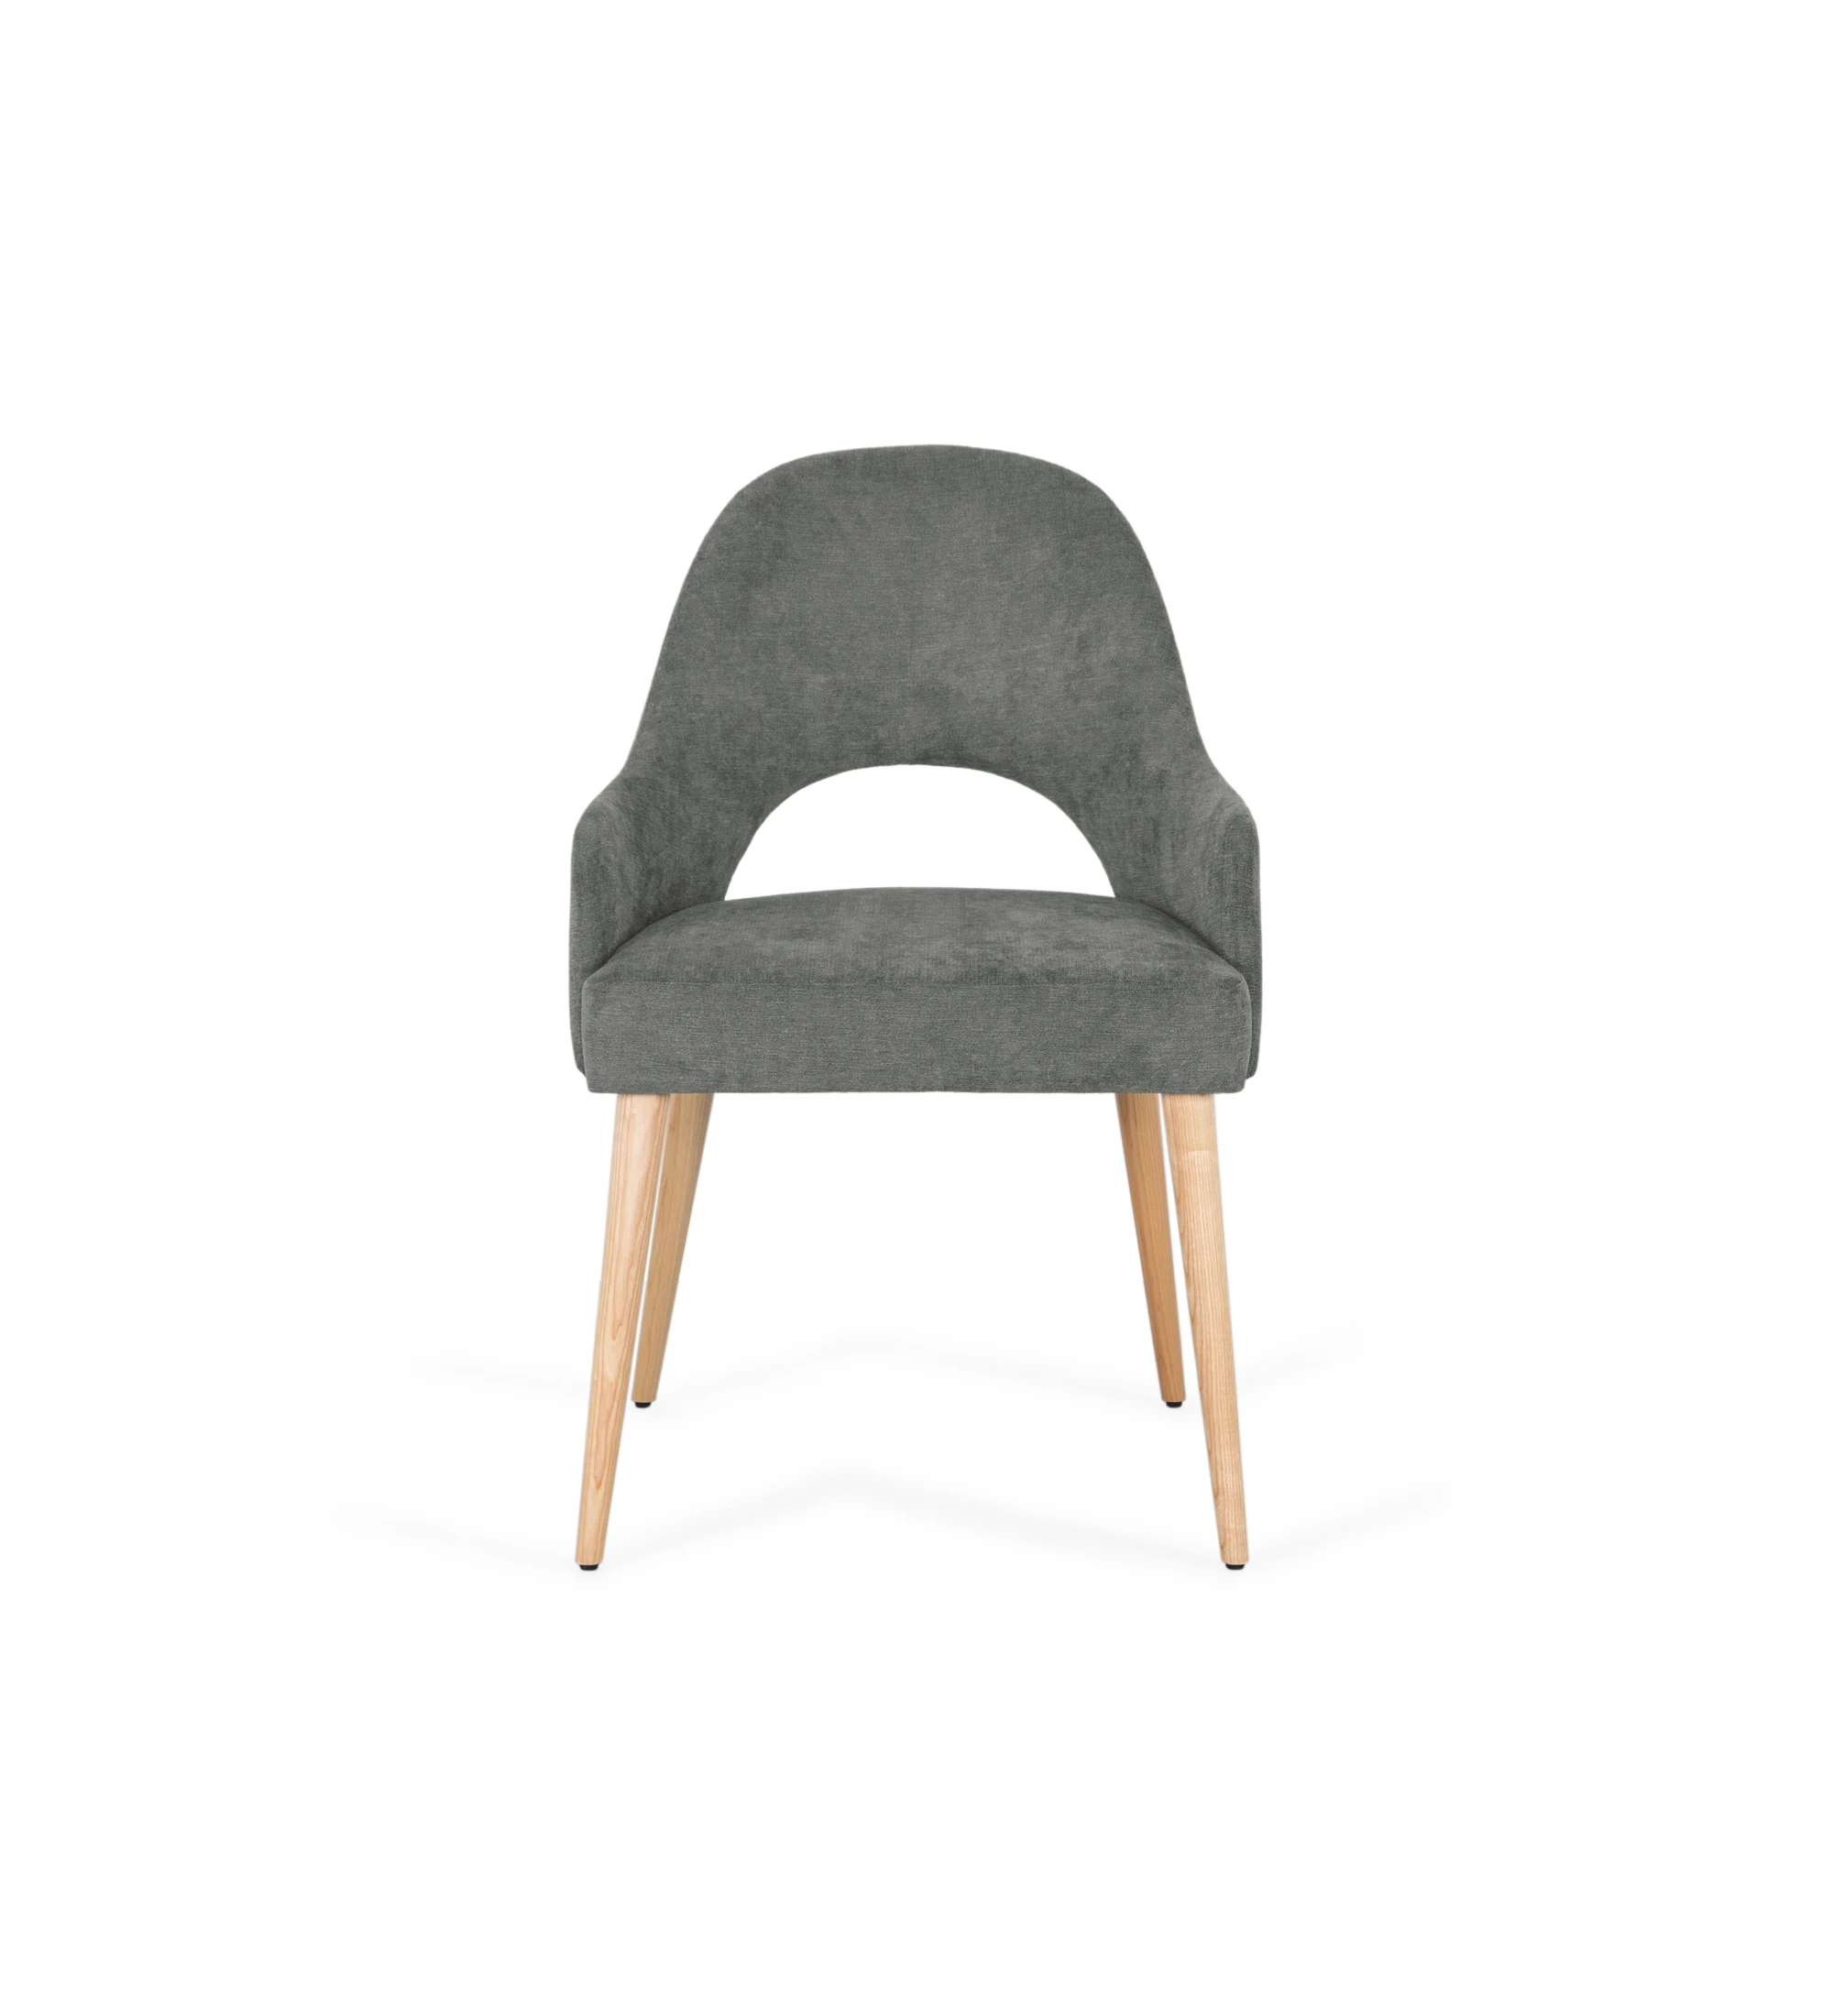 Cadeira Paris com braços, estofada a tecido verde, pés em madeira cor natural.